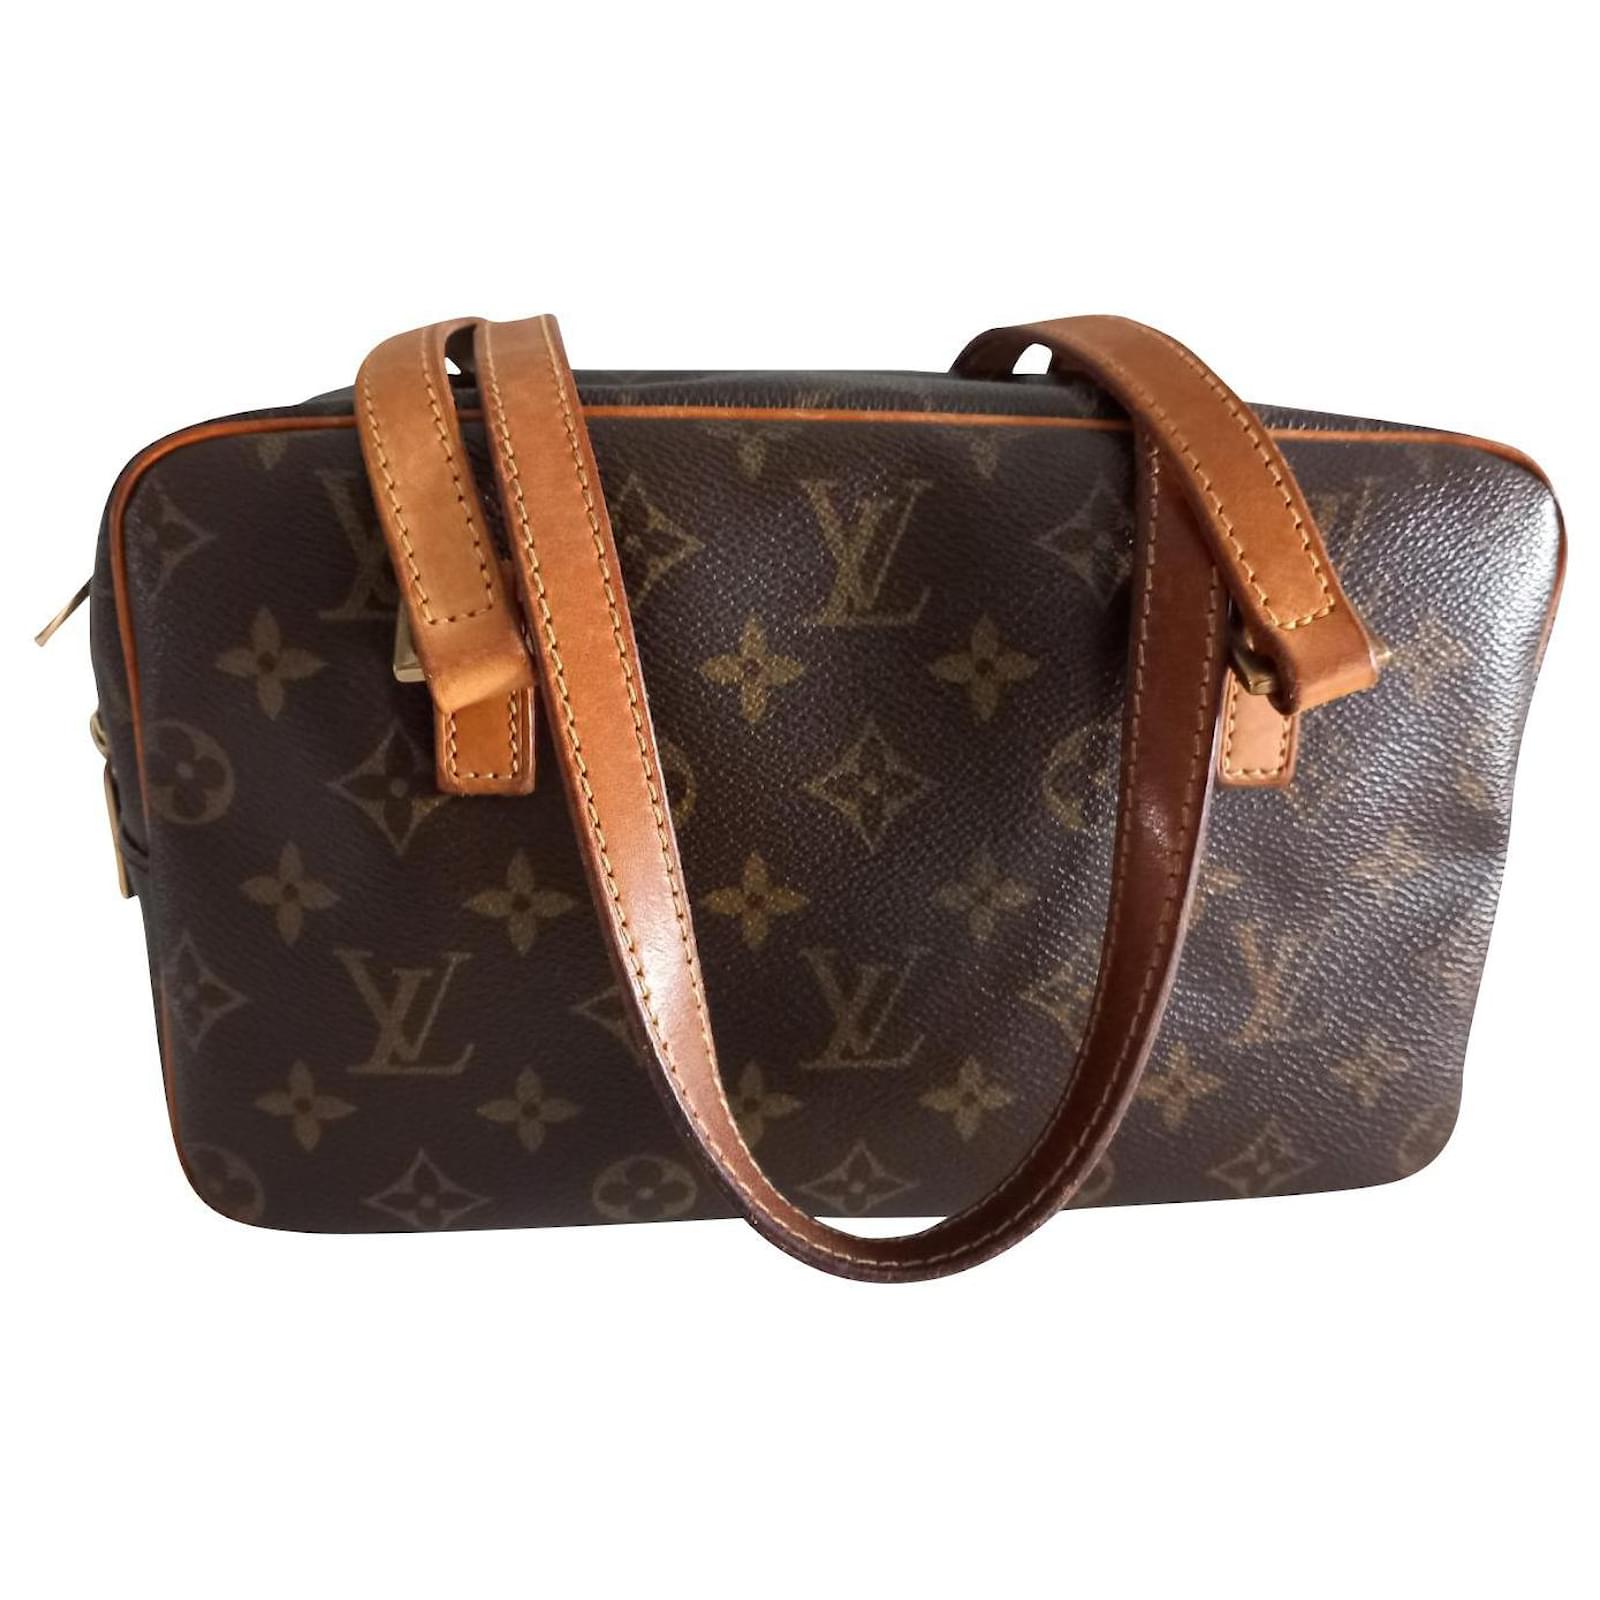 Louis Vuitton Cite Monogram Canvas Leather Shoulder Bag